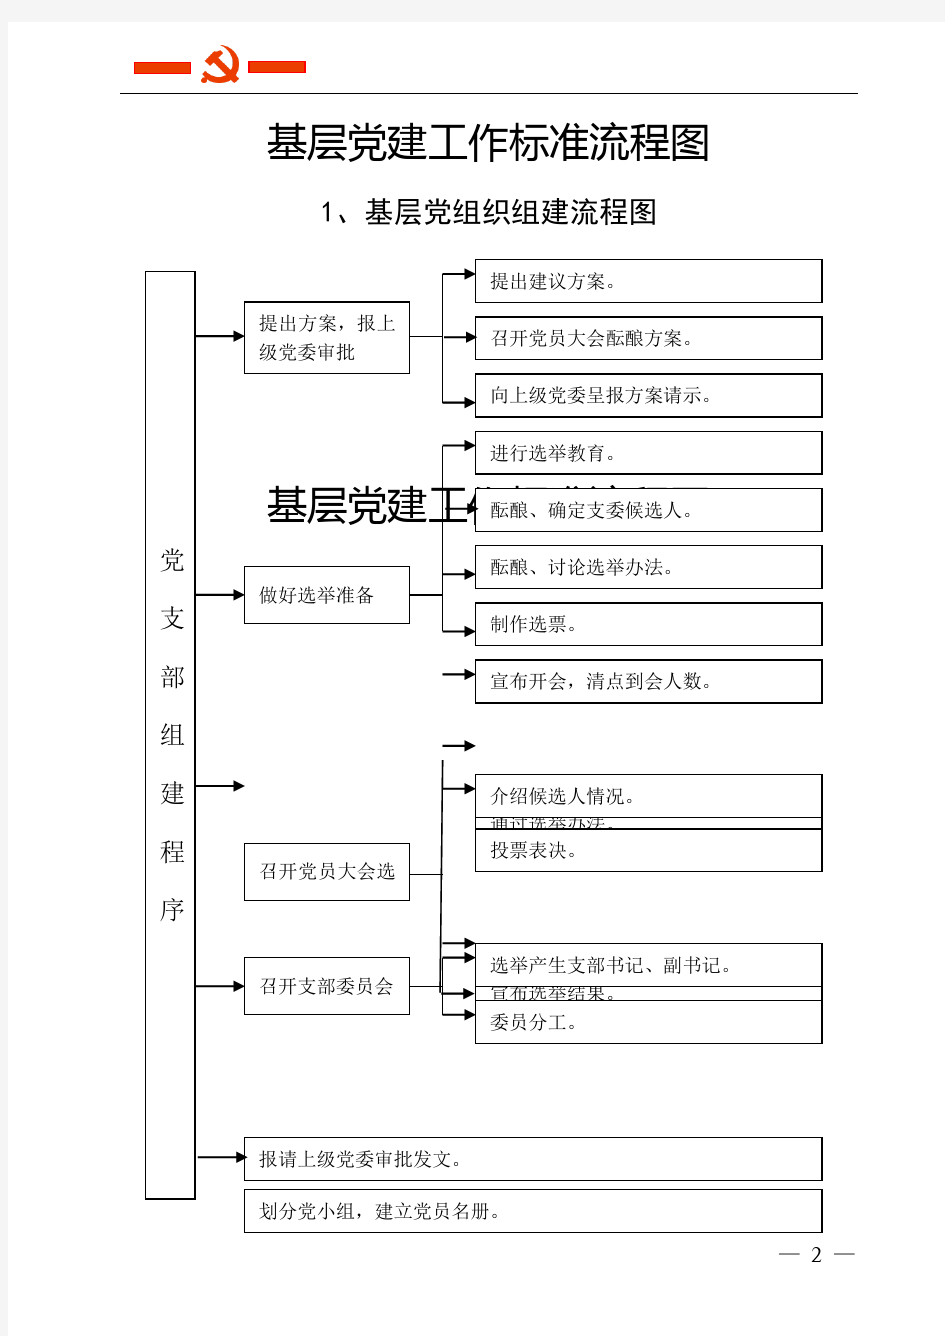 【党建】基层党建工作20个标准流程图